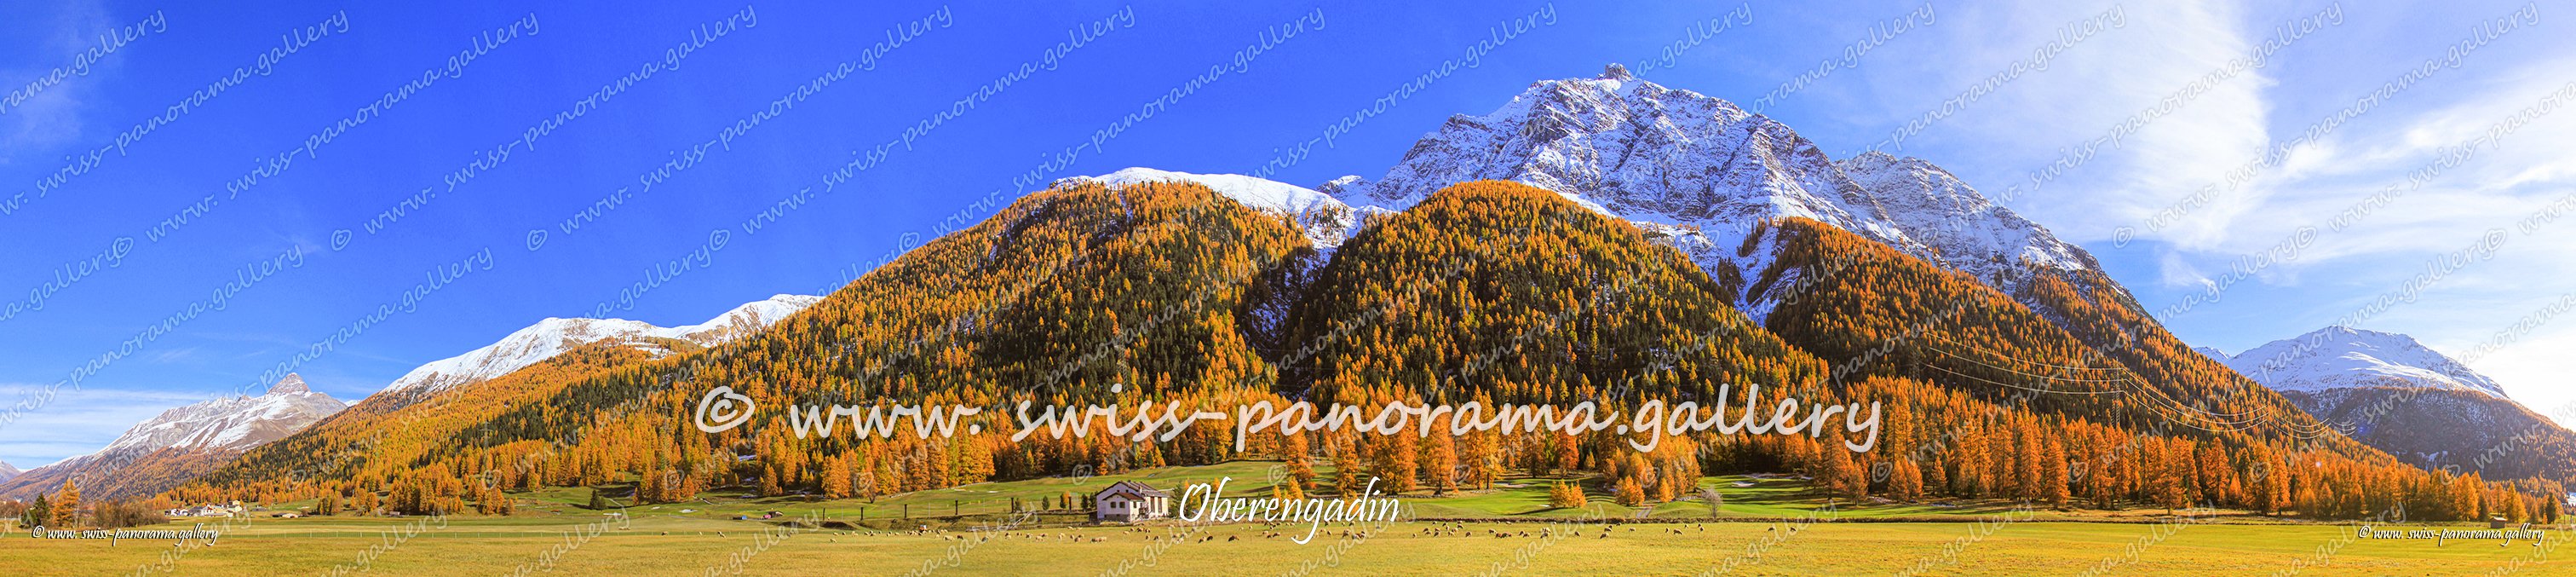 Panorama Oberengadin 
Oberengadin Panorama, Madulein panorama, Piz Mezzaun 2'963 m (2.5 km), Spih d'Esan 2'823 m (8 km), Munt M üsella 2630m 4km, Piz Mezzaun 2'963 m (2.5 km), Piz Arpiglia 2'765 m (4 km), Piz Murtiröl 2'660 , Piz d'Esan 3'127 m (9 km),  Piz d'Esan 3'127 m (9 km)
